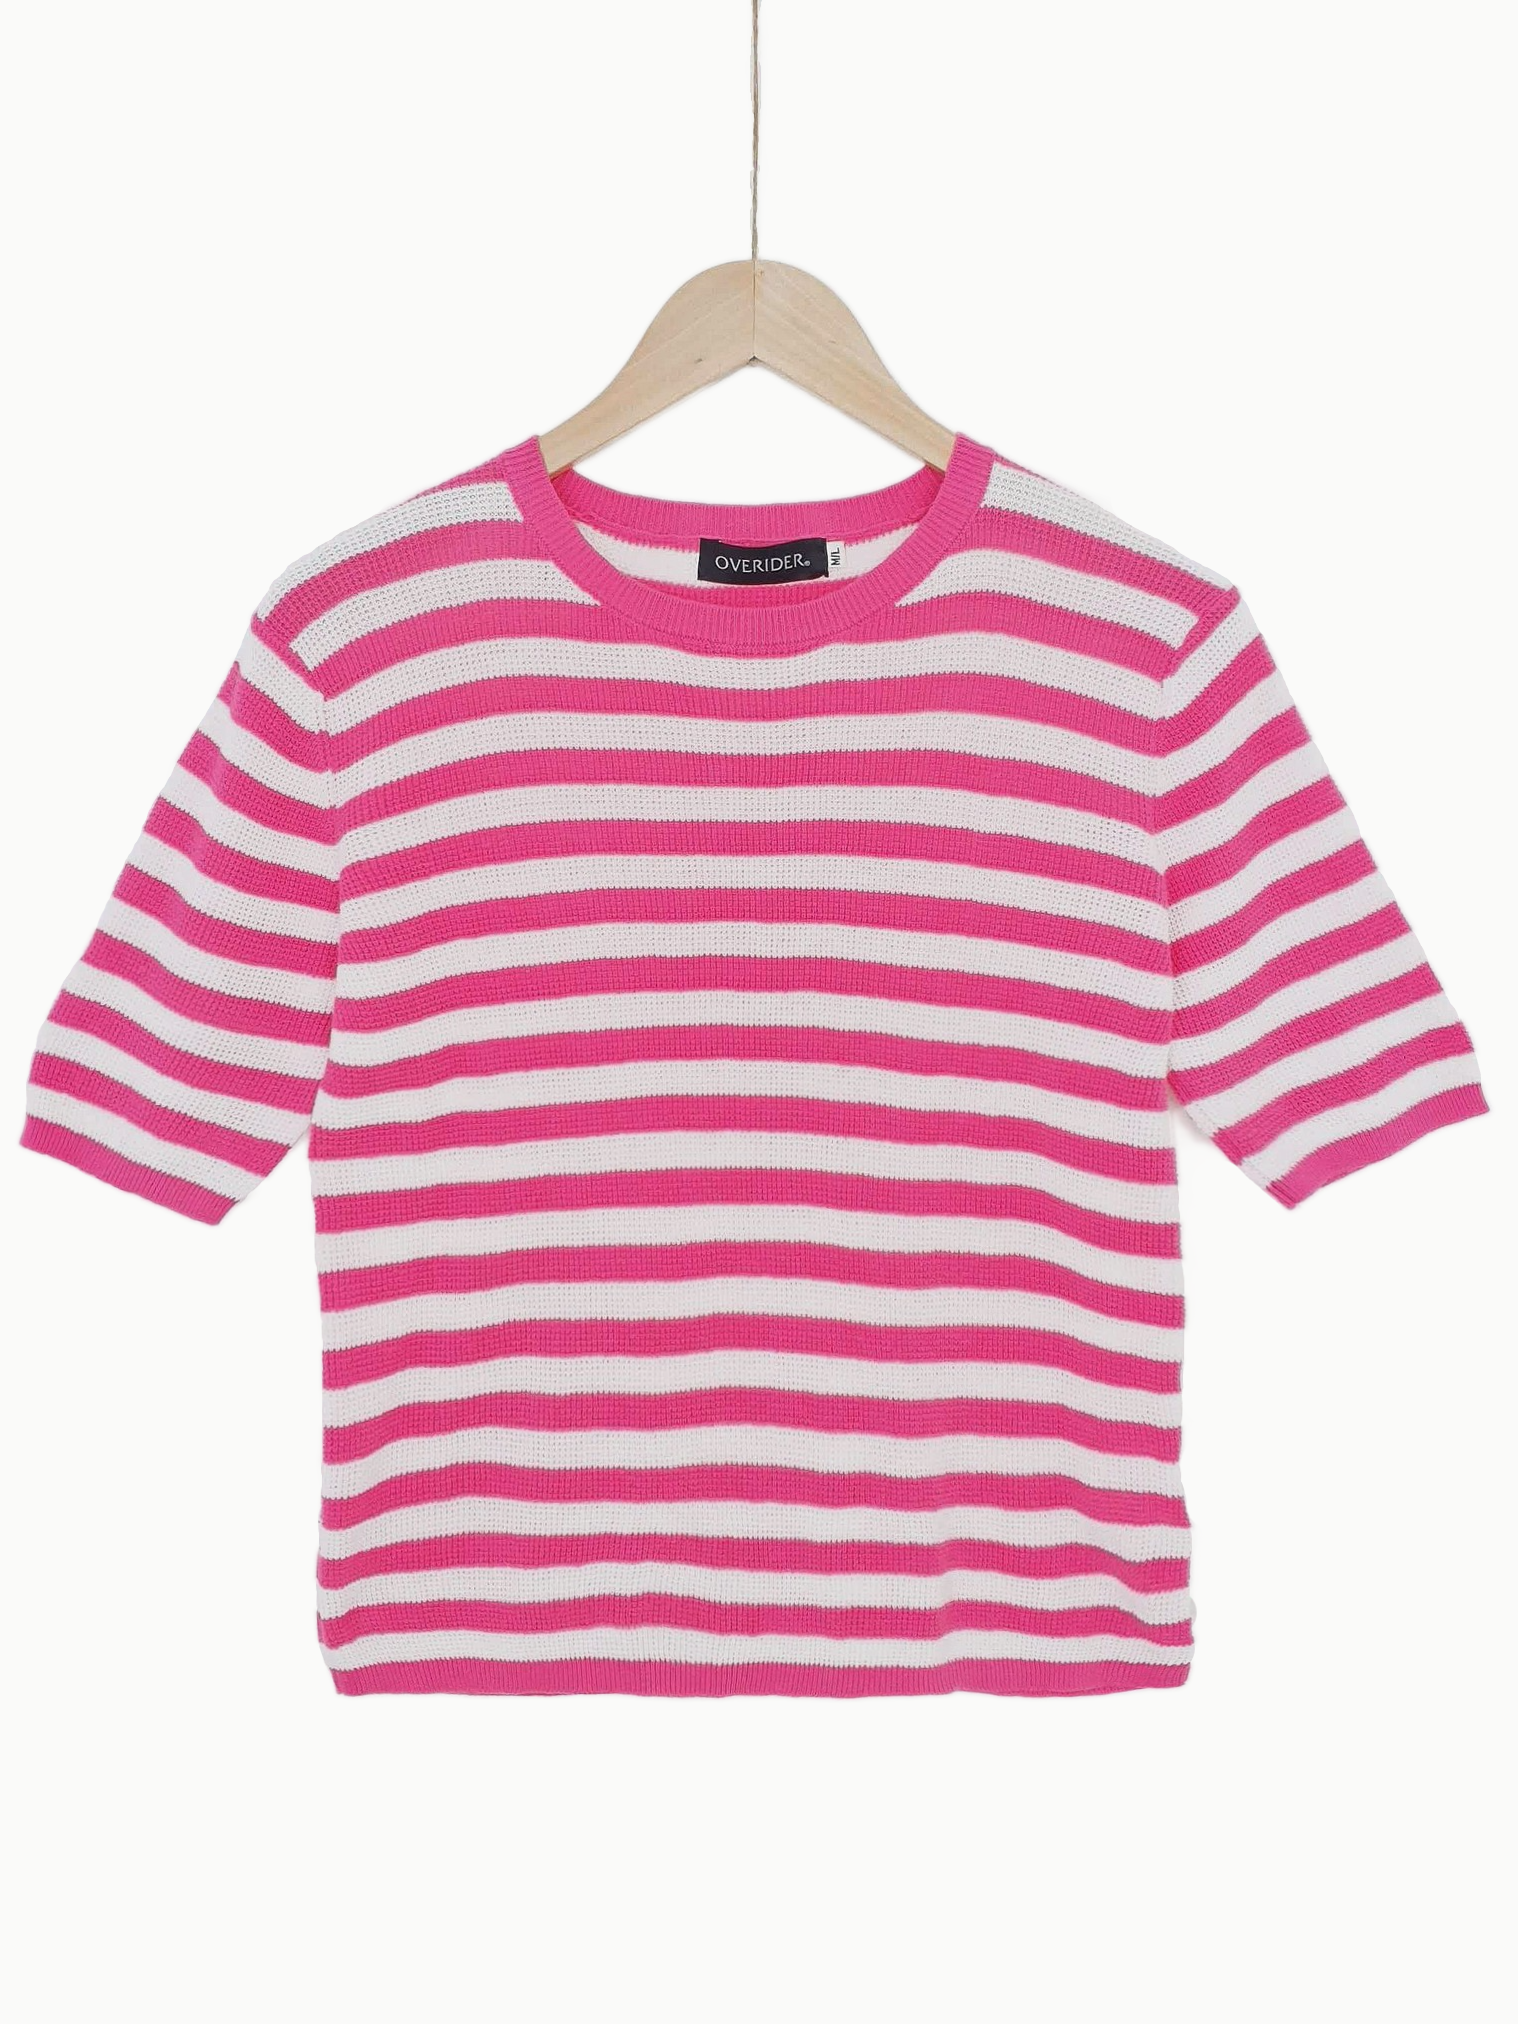 INNA | Breton Knit Sweater Top | Fuchsia Pink